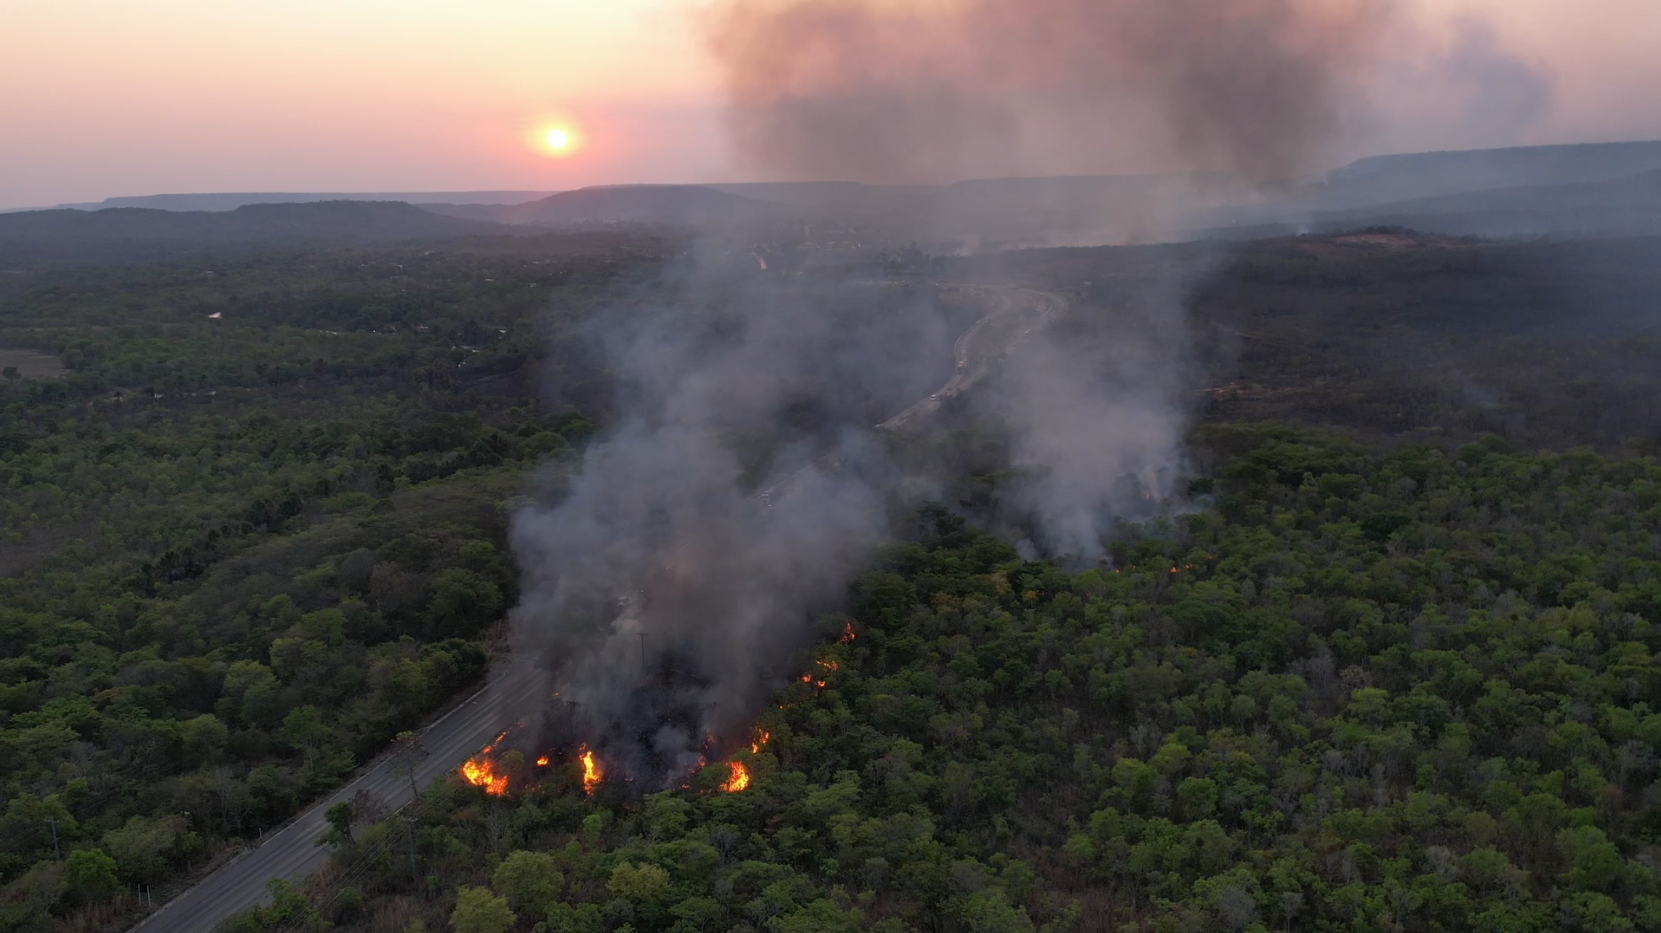 Base de Incêndios Florestais no Oeste da Bahia, segue combatendo focos de incêndio que já duram três dias na Serra da Bandeira, em Barreiras (BA). O local que abriga vegetação de cerrado fica ao redor da área urbana da cidade, nas proximidades da BR-242